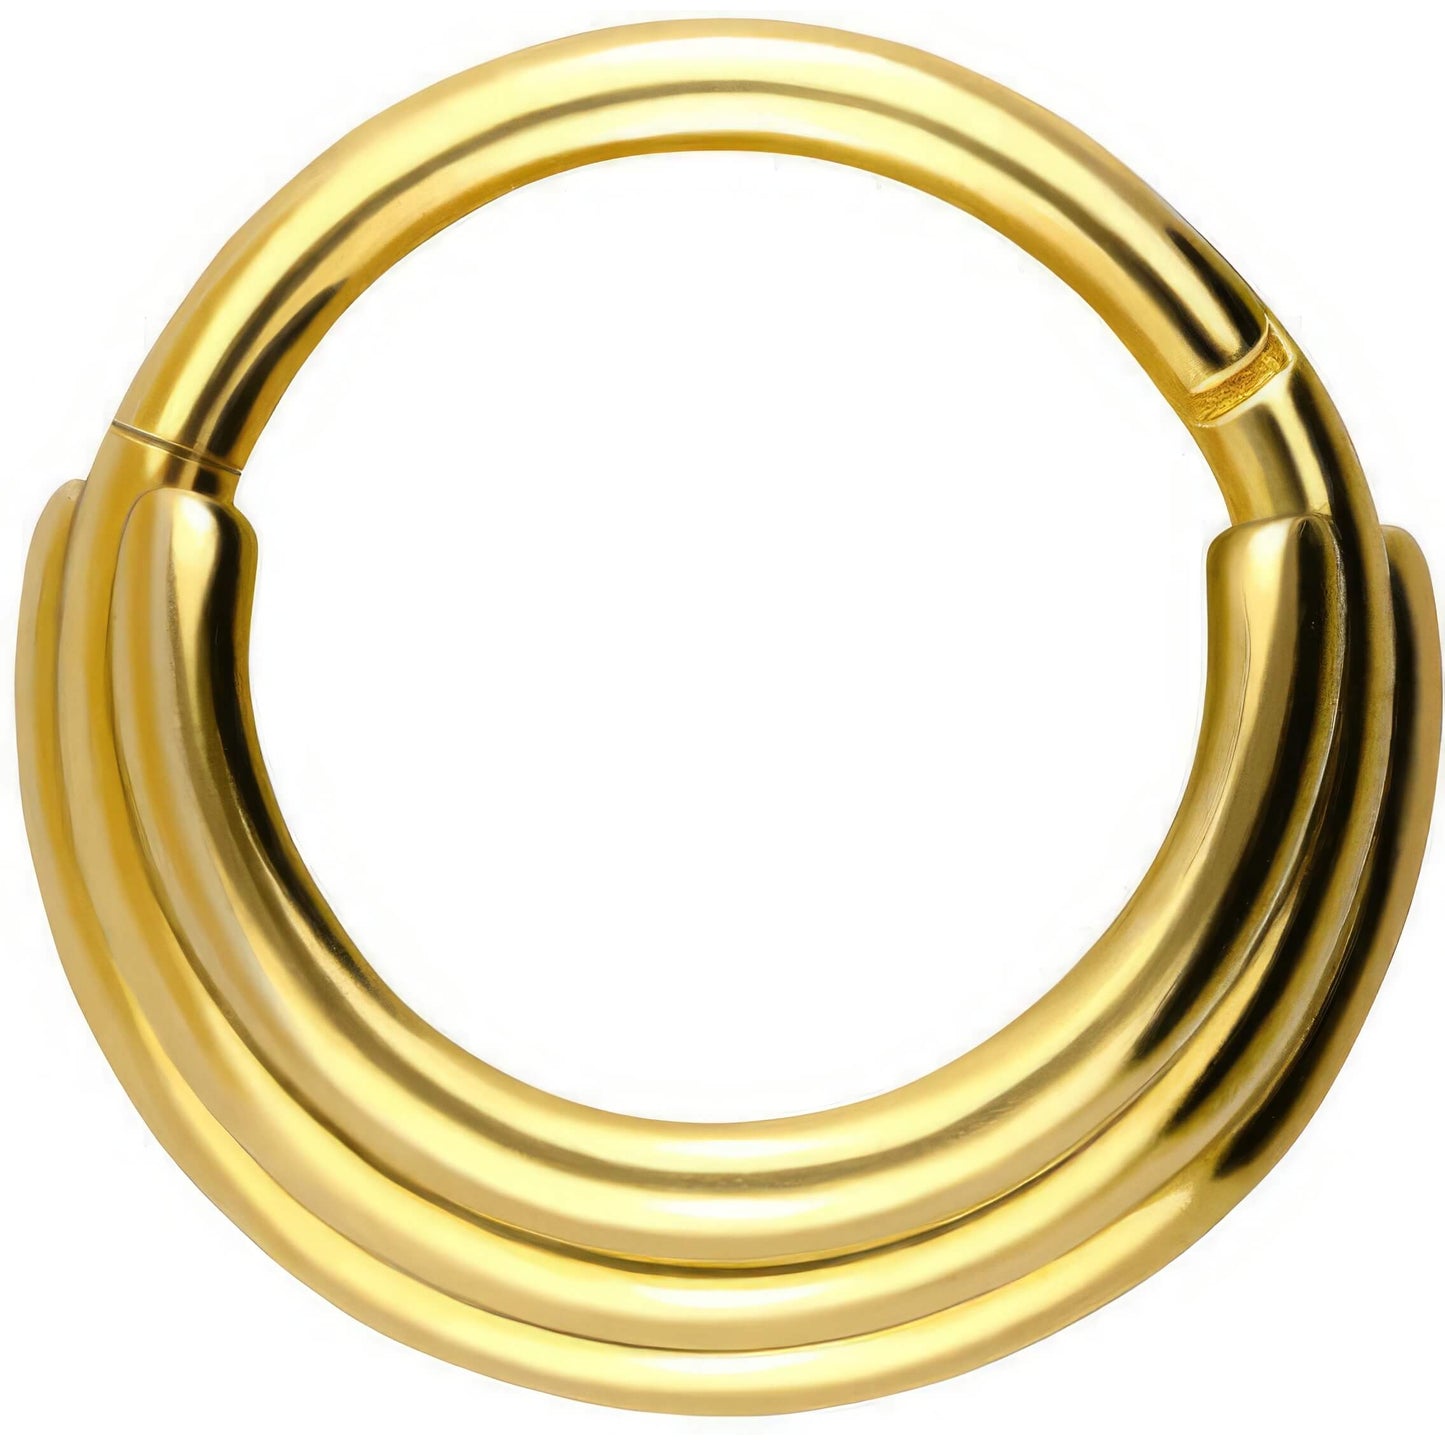 Solid Gold 18 Carat Ring Tripple Ring Clicker